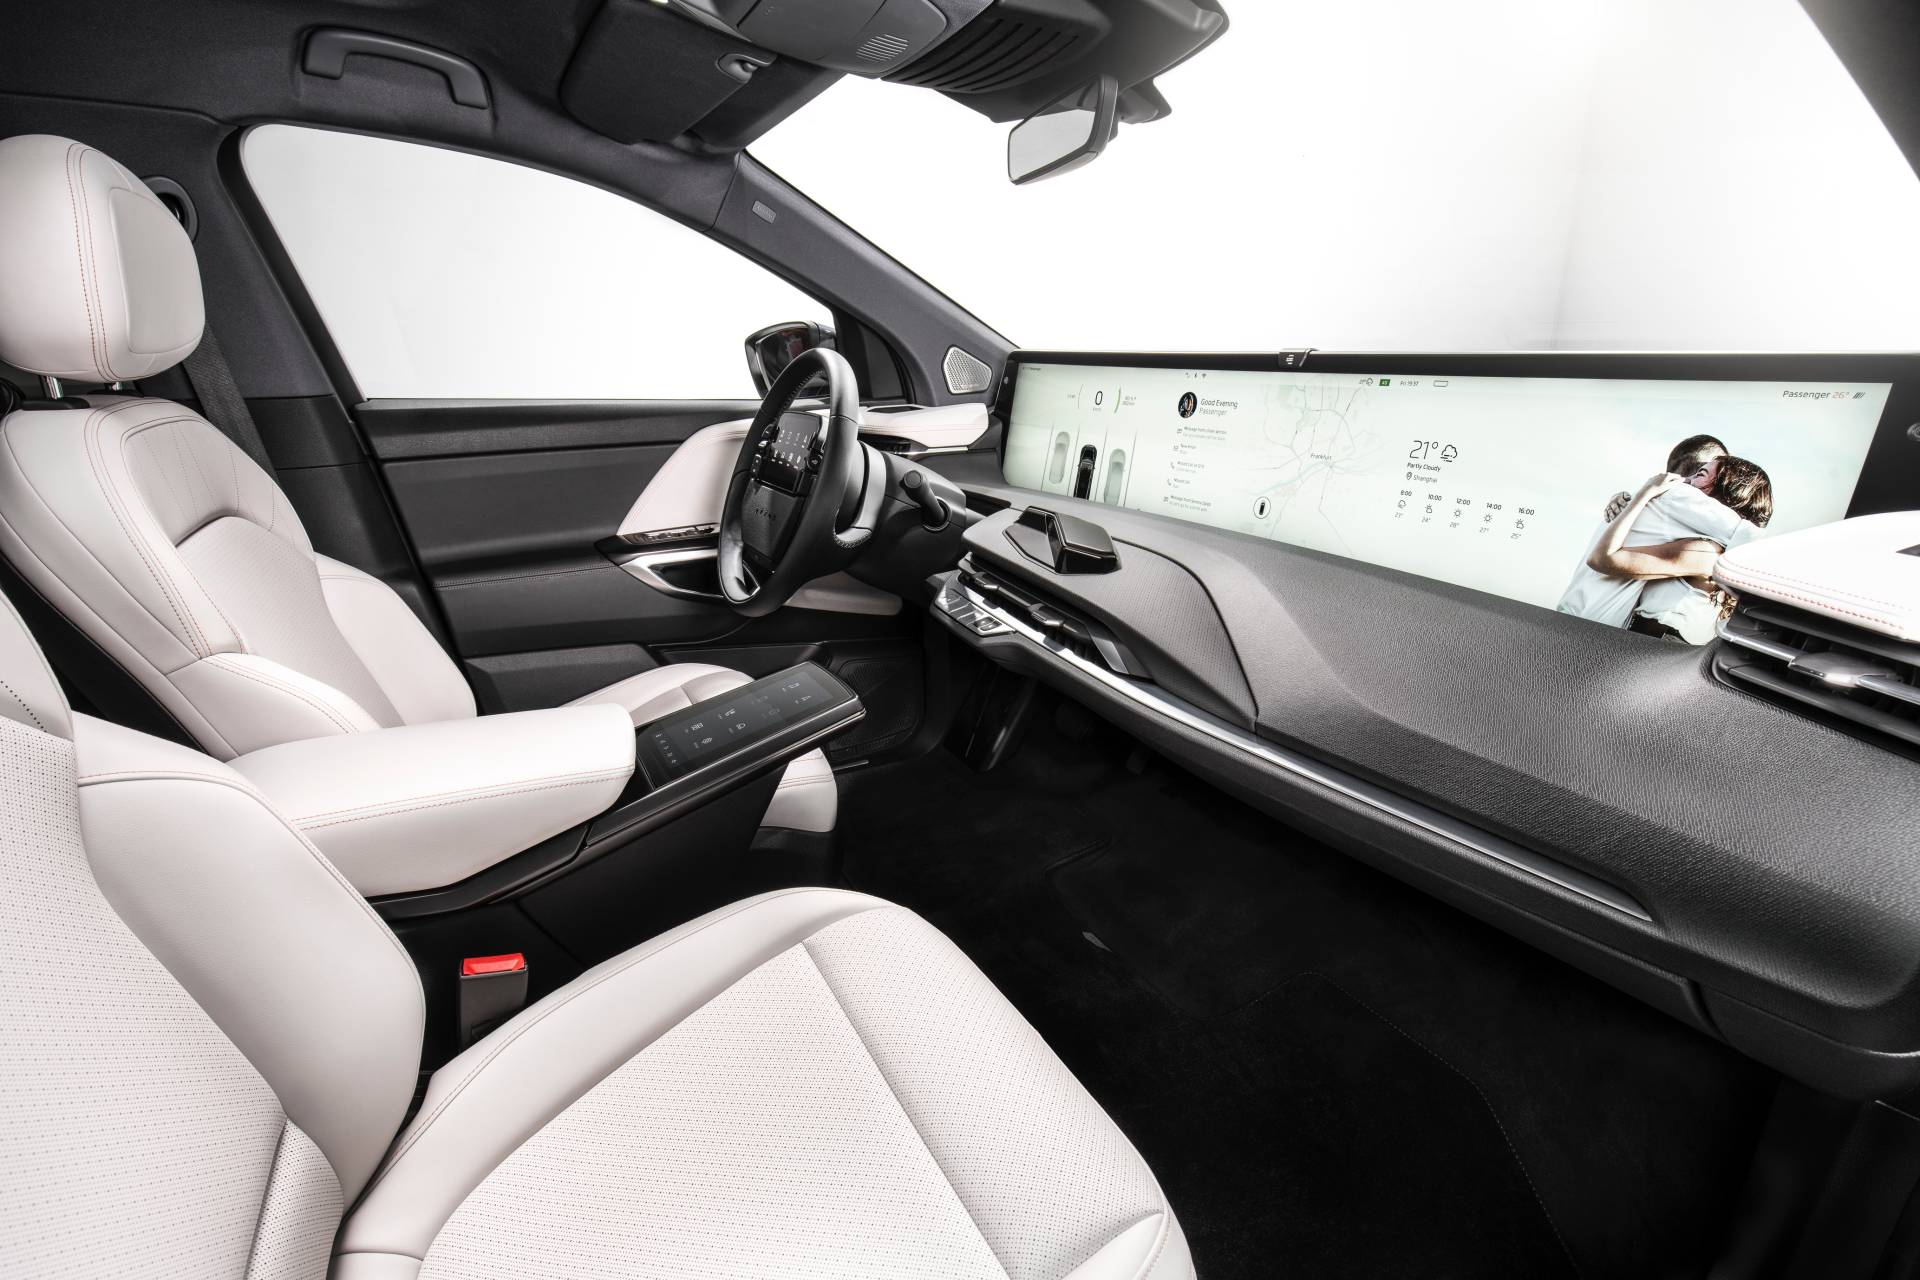 48 inç multimedya ekranına sahip Byton M-Byte elektrikli SUV, nihai tasarımıyla Frankfurt'ta